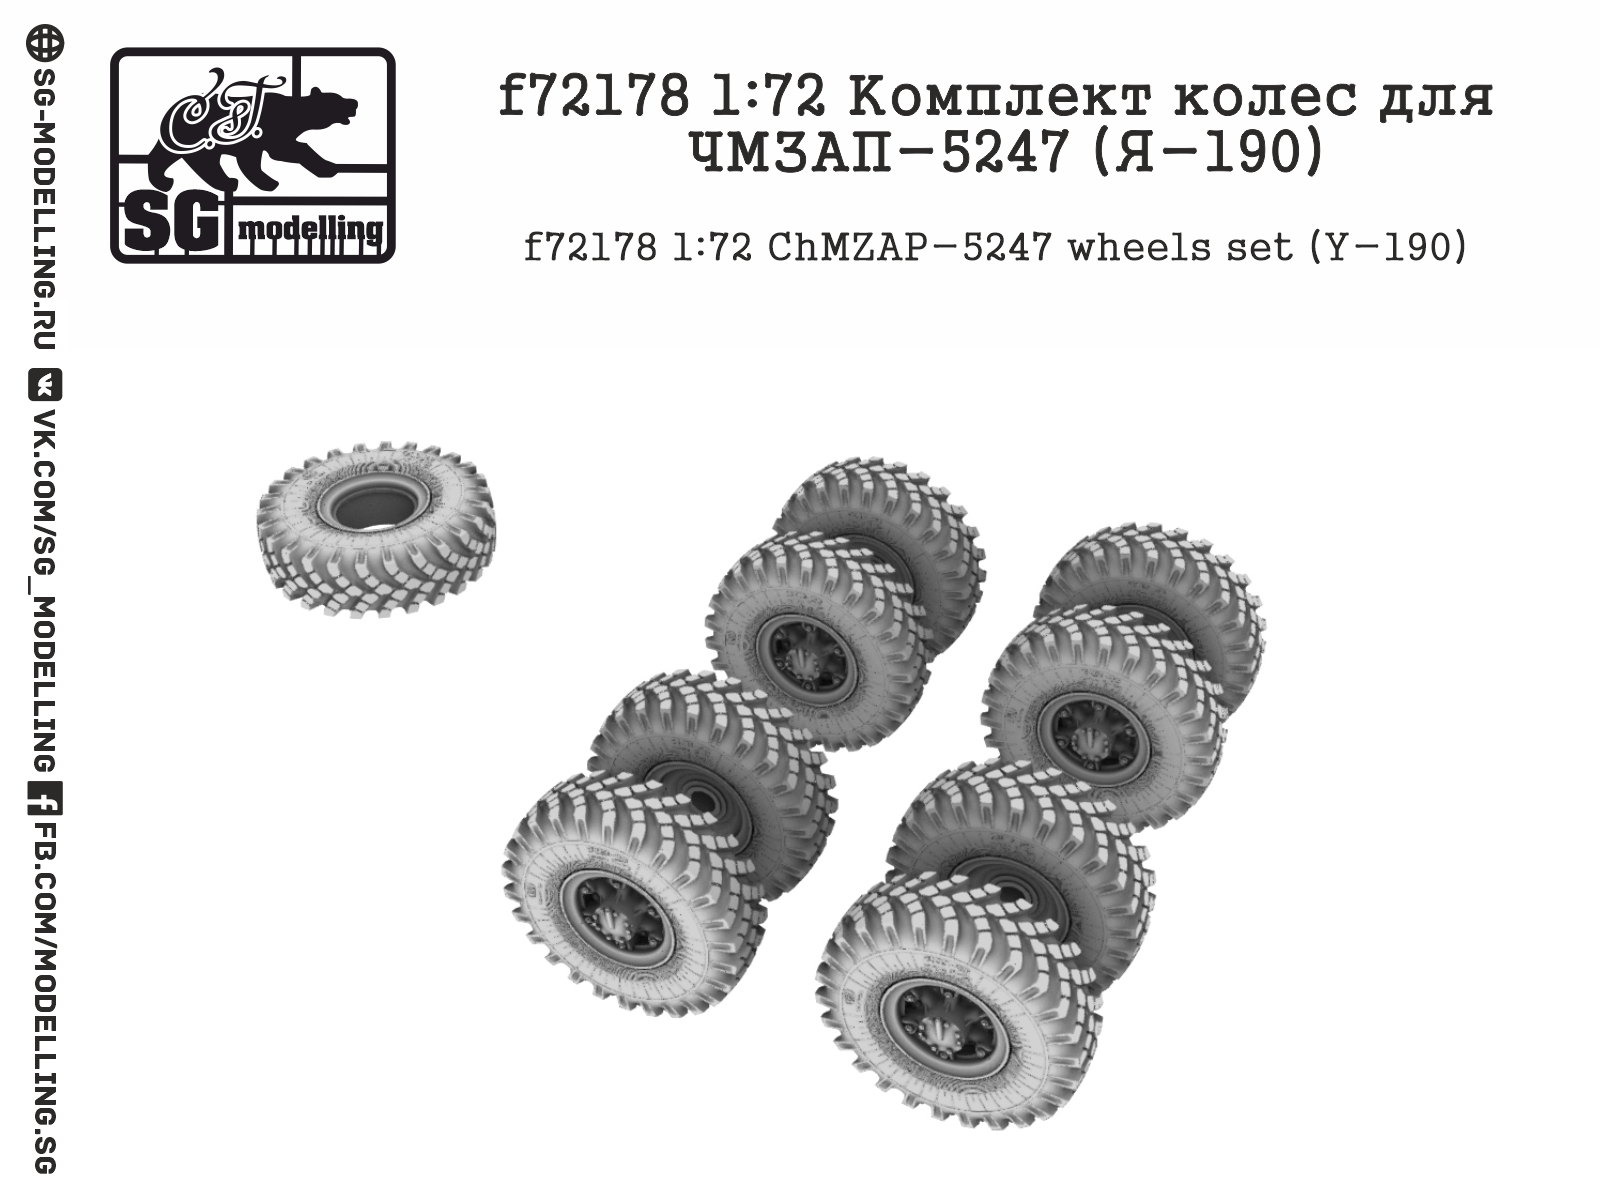 f72178  дополнения из смолы  Комплект колес для ЧМЗАП-5247 (Я-190)  (1:72)